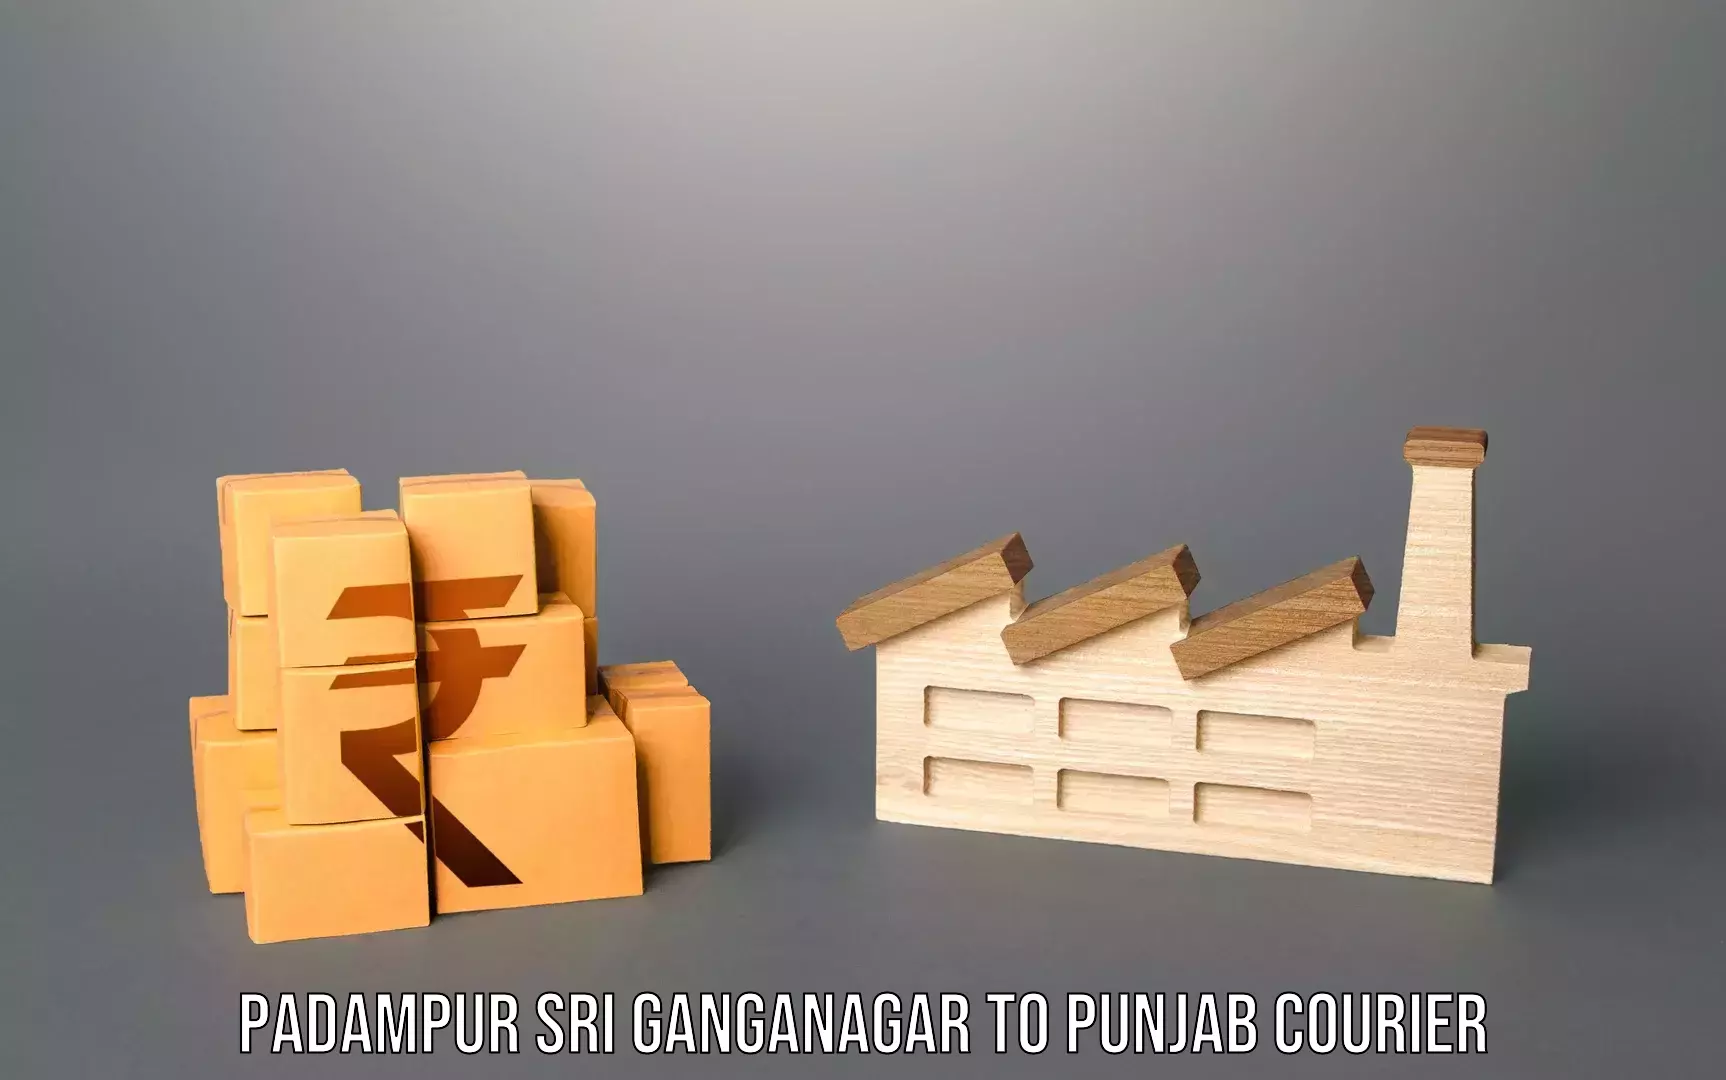 Baggage handling services Padampur Sri Ganganagar to Adampur Jalandhar